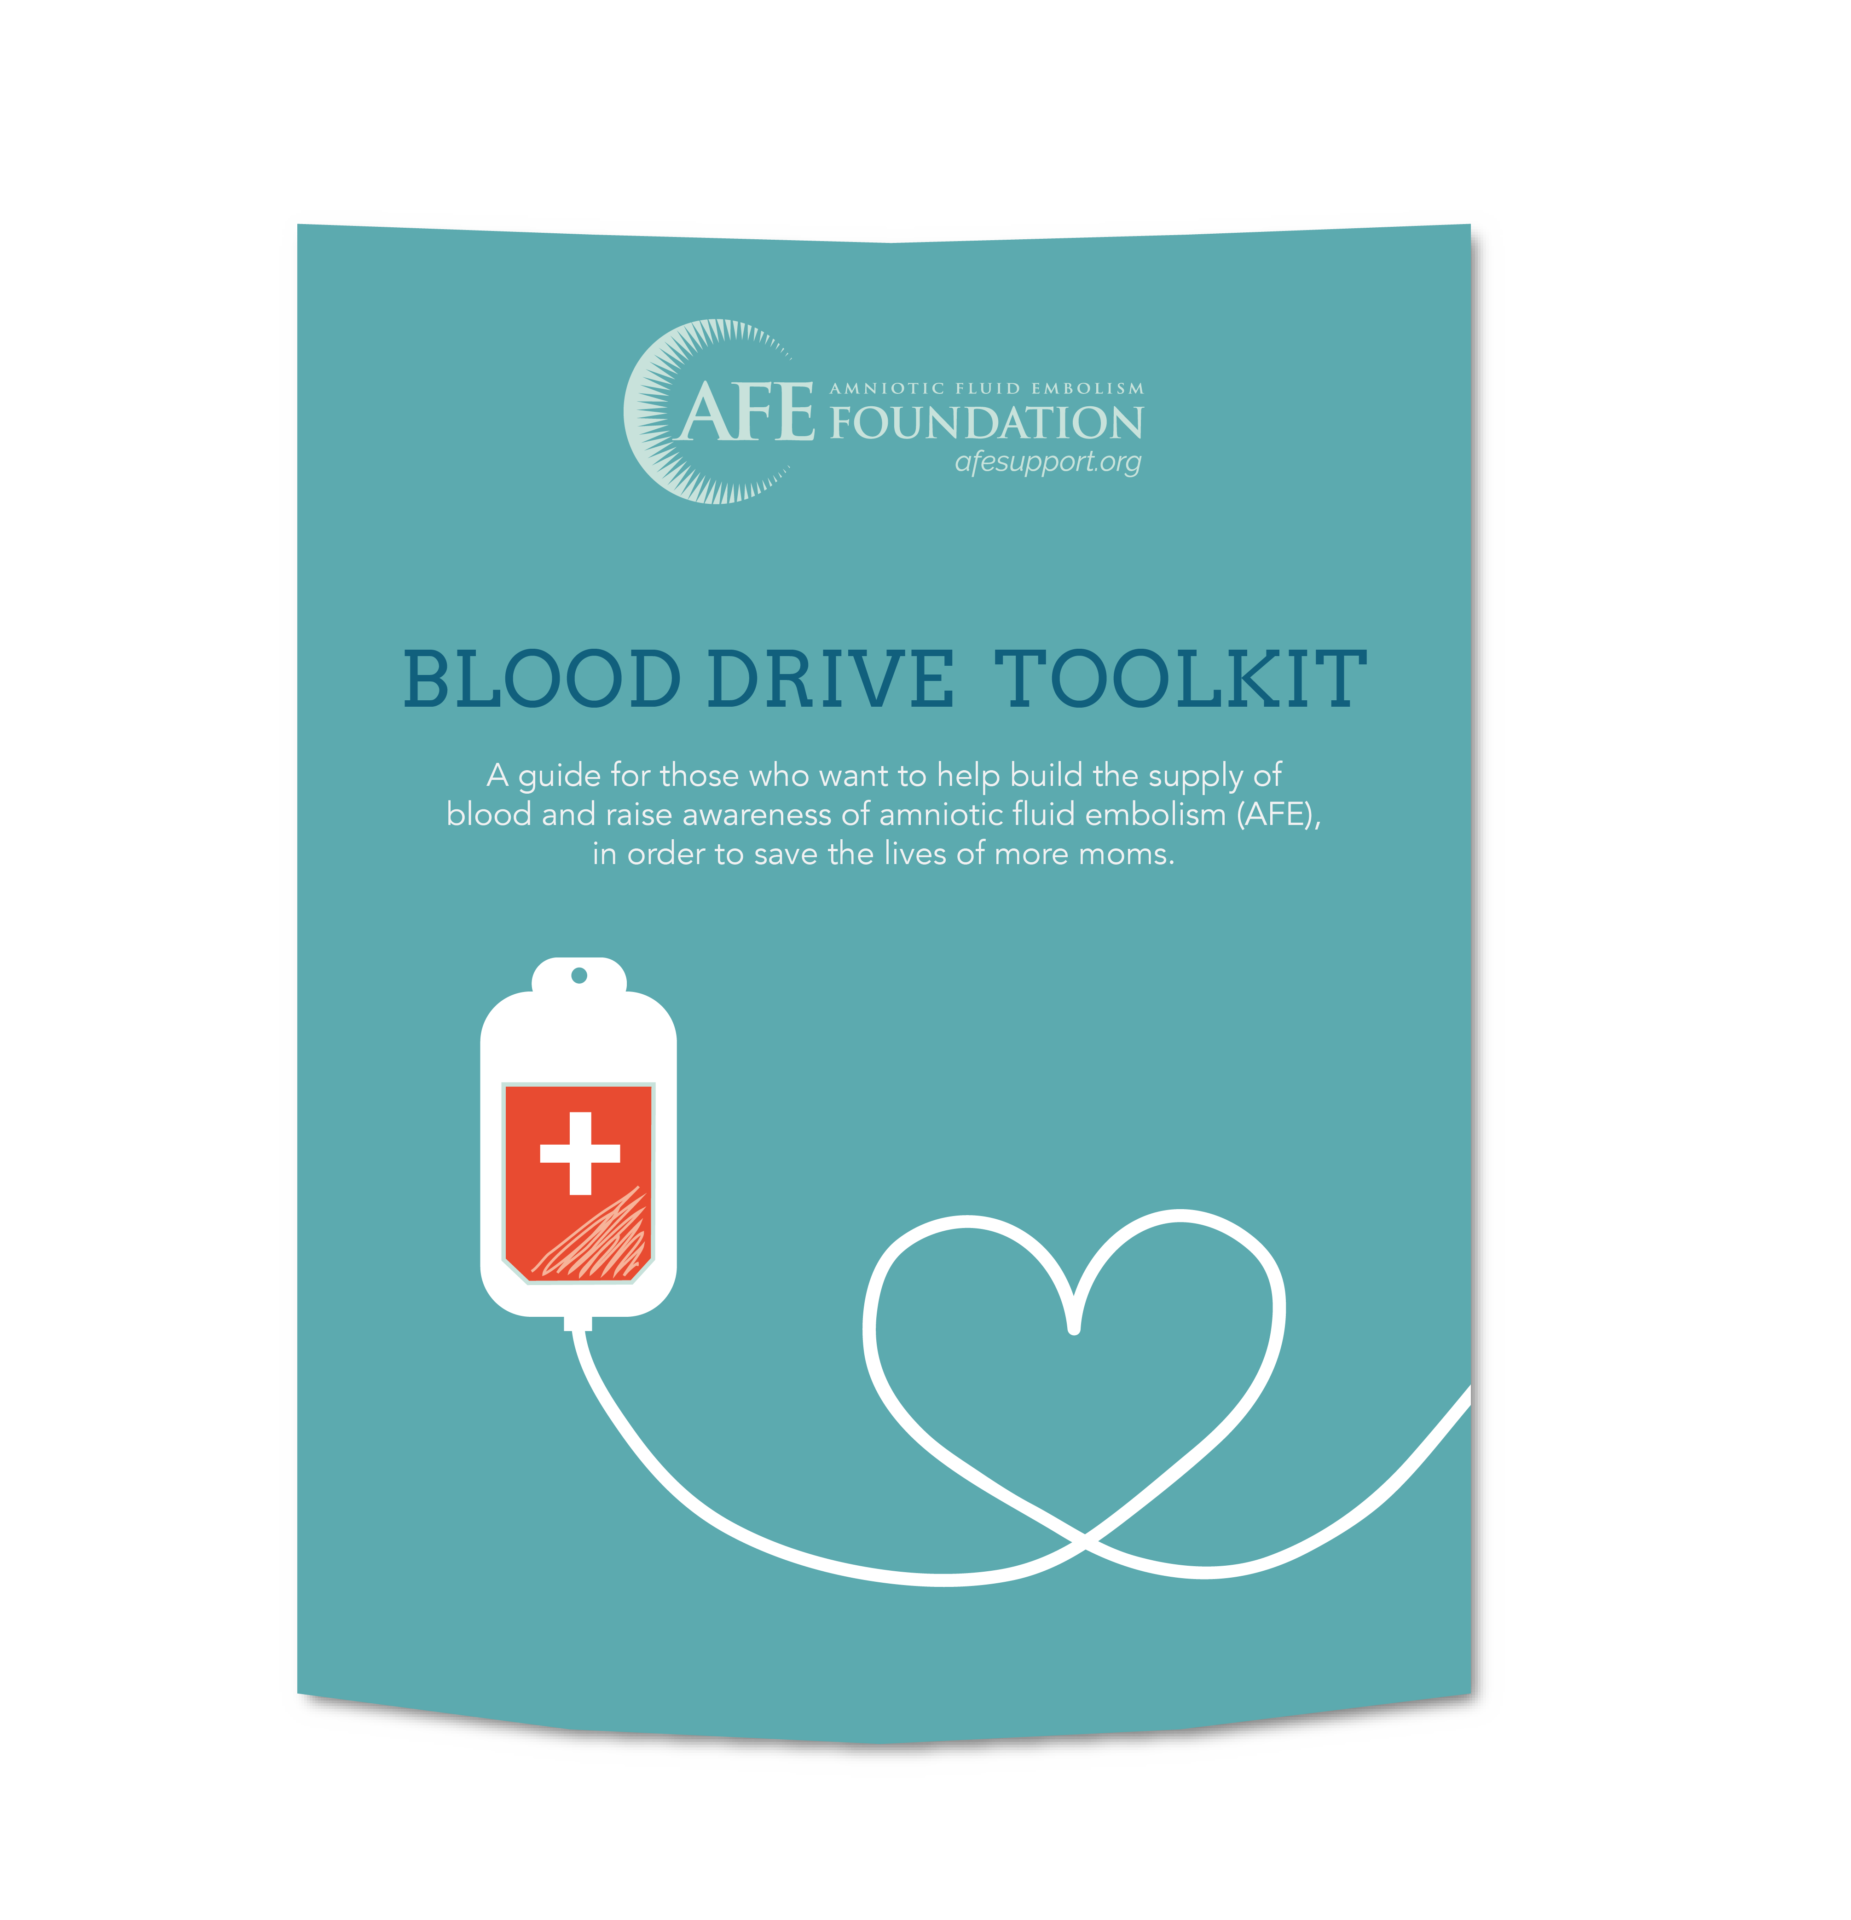 Download Afe Blooddrive Toolkit Mockup 01 Amniotic Fluid Embolism Foundation